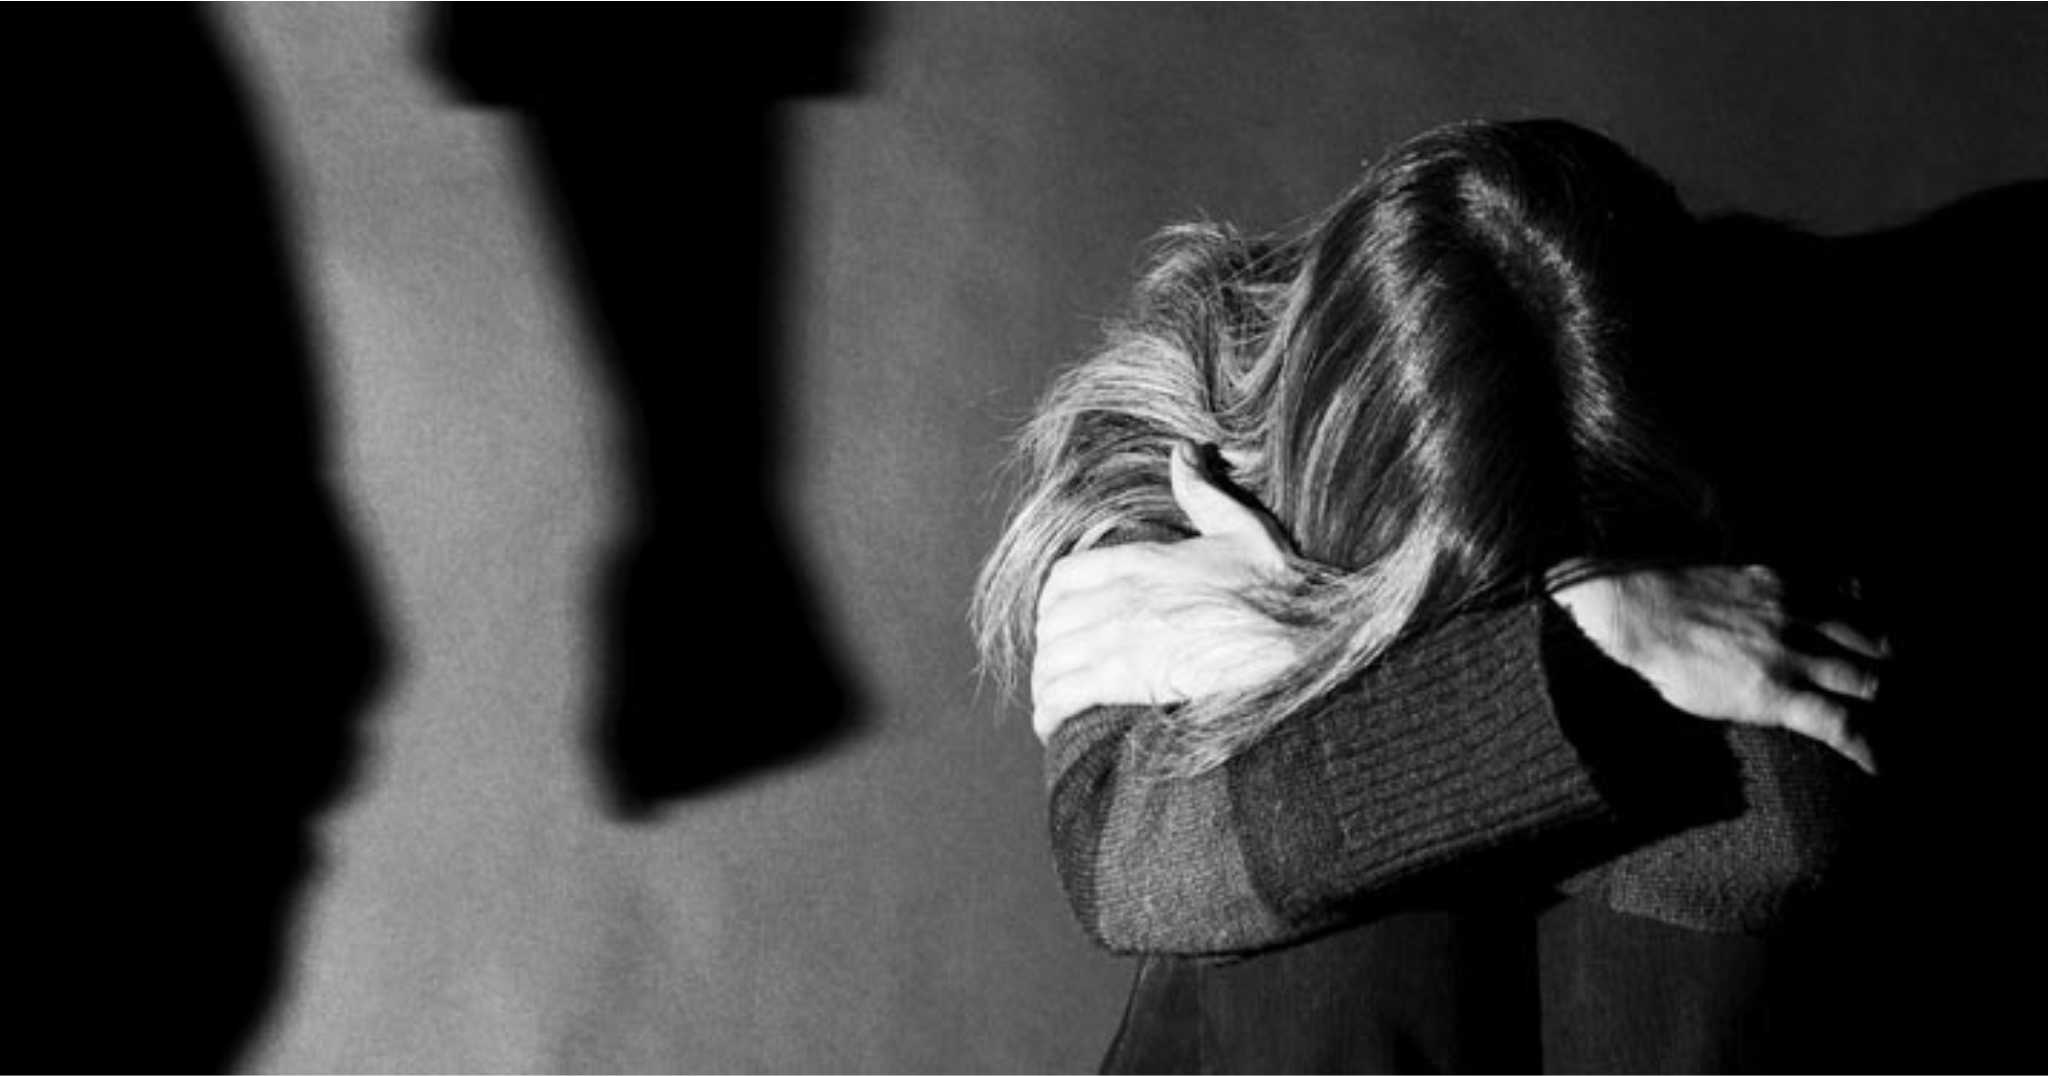 Δραματική αύξηση της βίας στην οικογένεια στην Πάφο: 11 υποθέσεις  και 10 συλλήψεις το Νοέμβριο